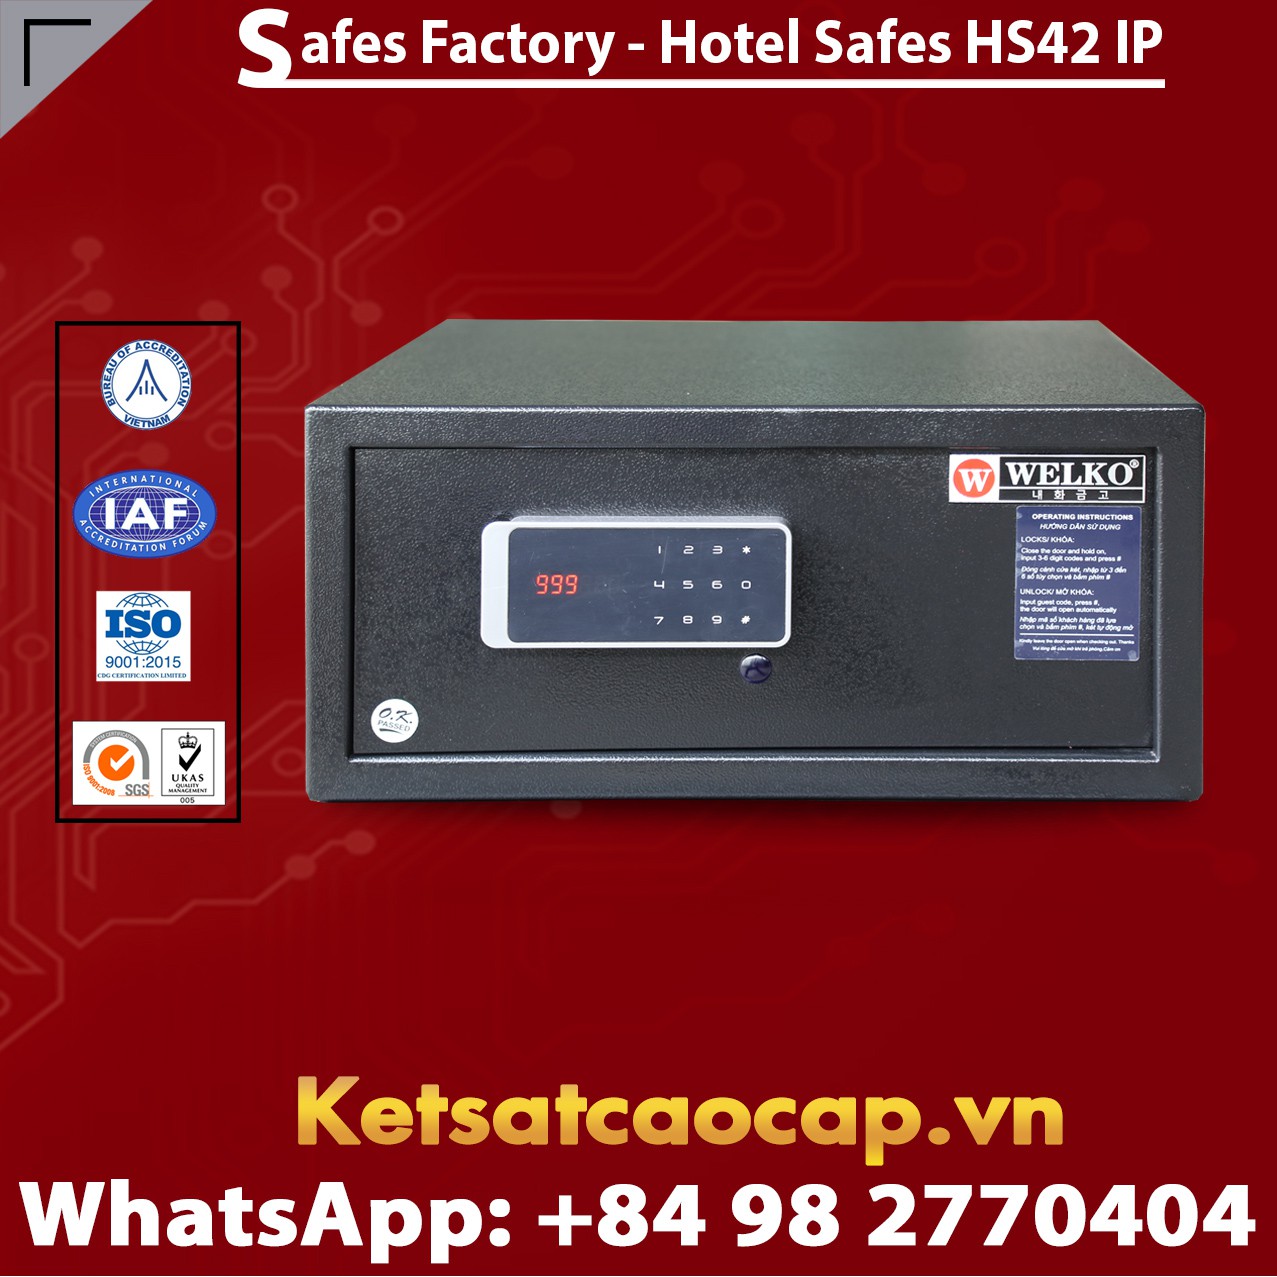 Hotel Safety Deposit Box WELKO HS42 IP